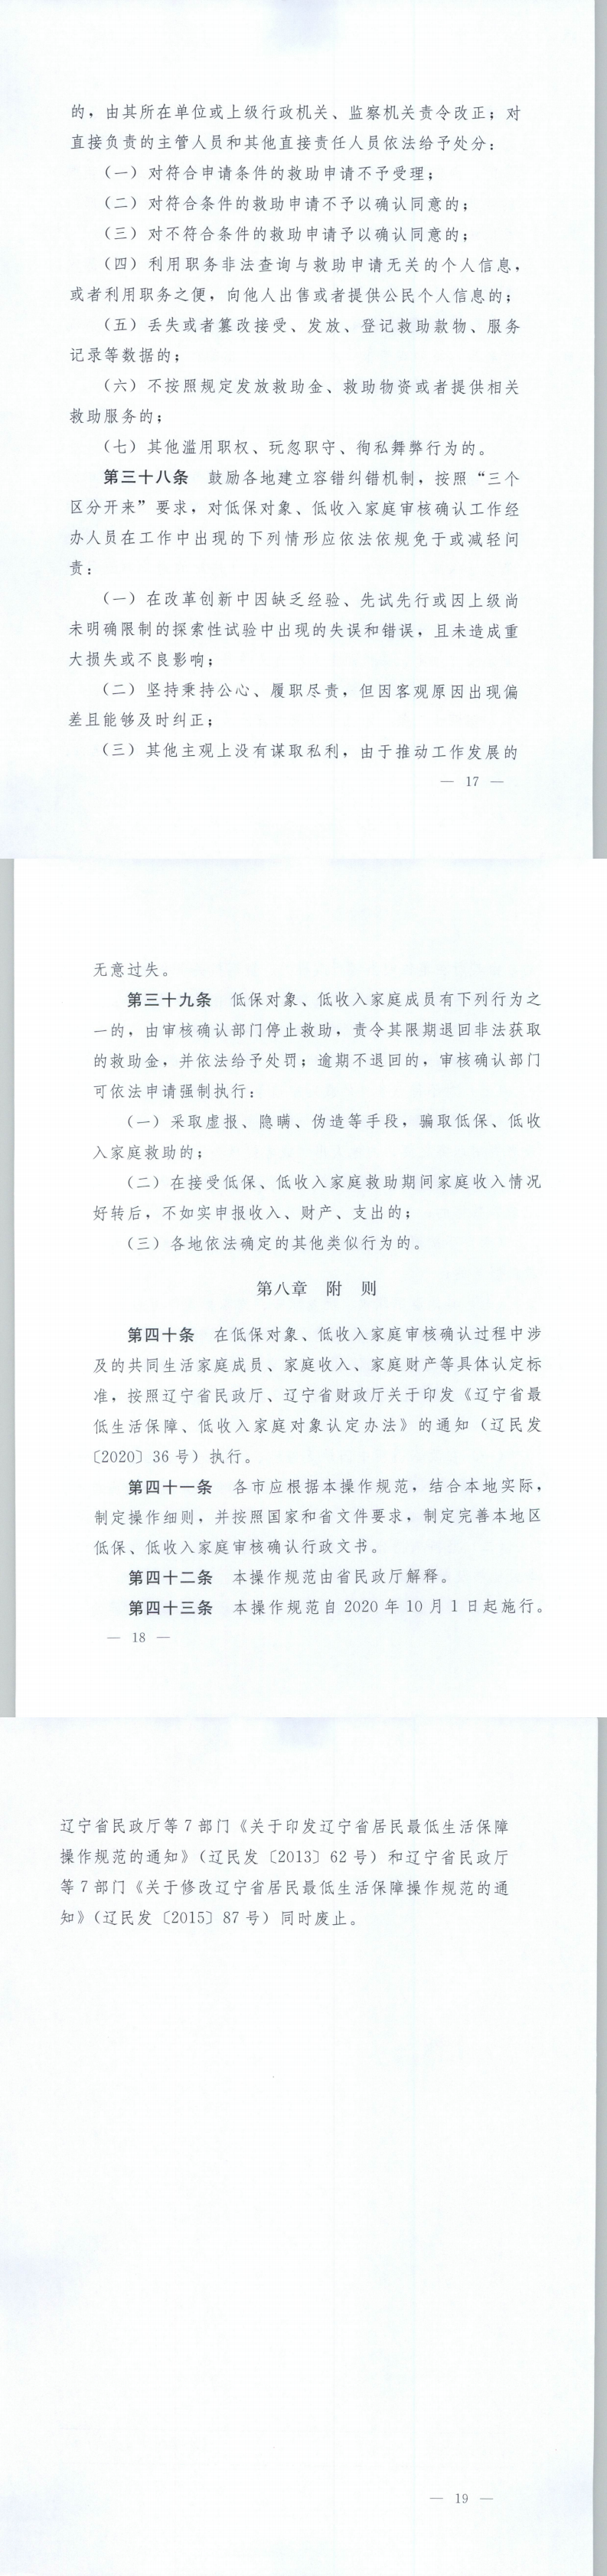 《辽宁省最低生活保障对象、低收入家庭审核确认操作规范》的通知5.png